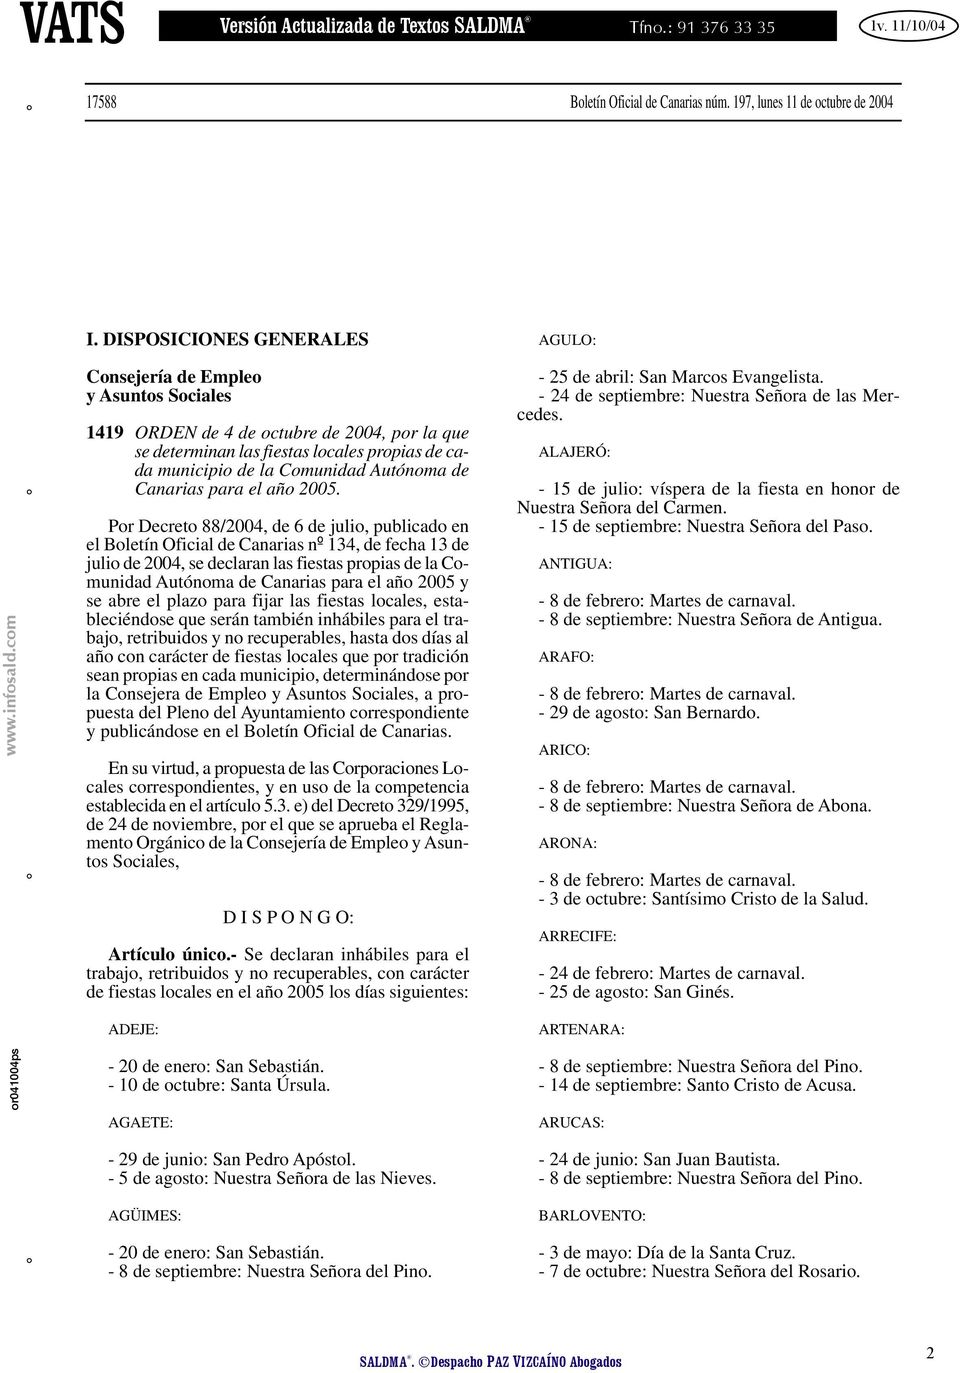 DISPOSICIONES GENERALES AGULO: Consejería de Empleo y Asuntos Sociales 1419 ORDEN de 4 de octubre de 2004, por la que se determinan las fiestas locales propias de cada municipio de la Comunidad